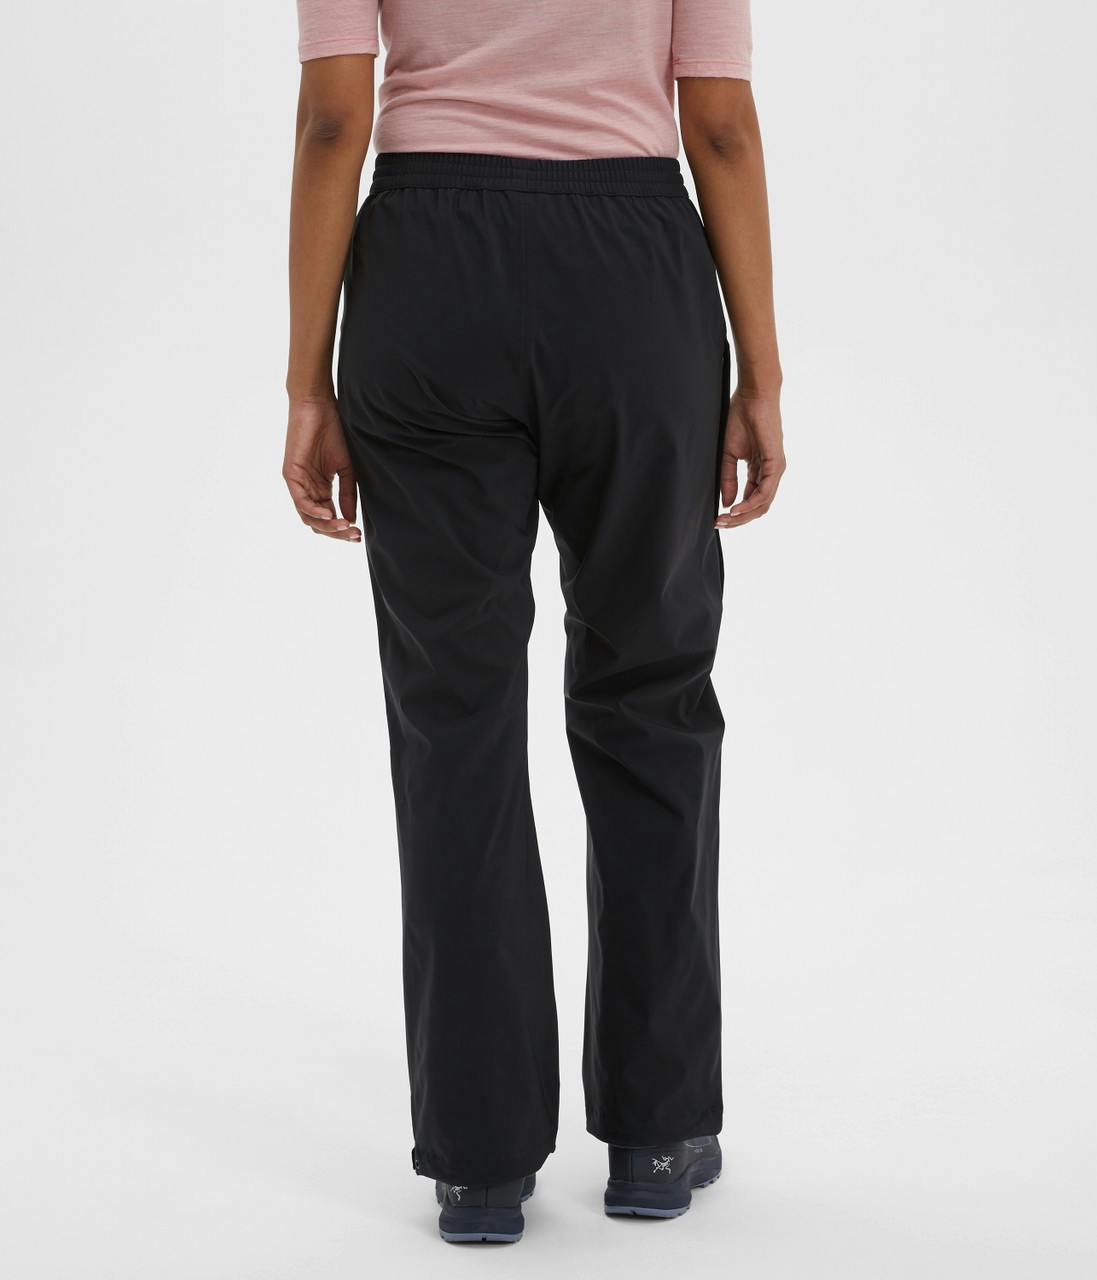 Pantalon imperméable extensible Hydrofoil Noir